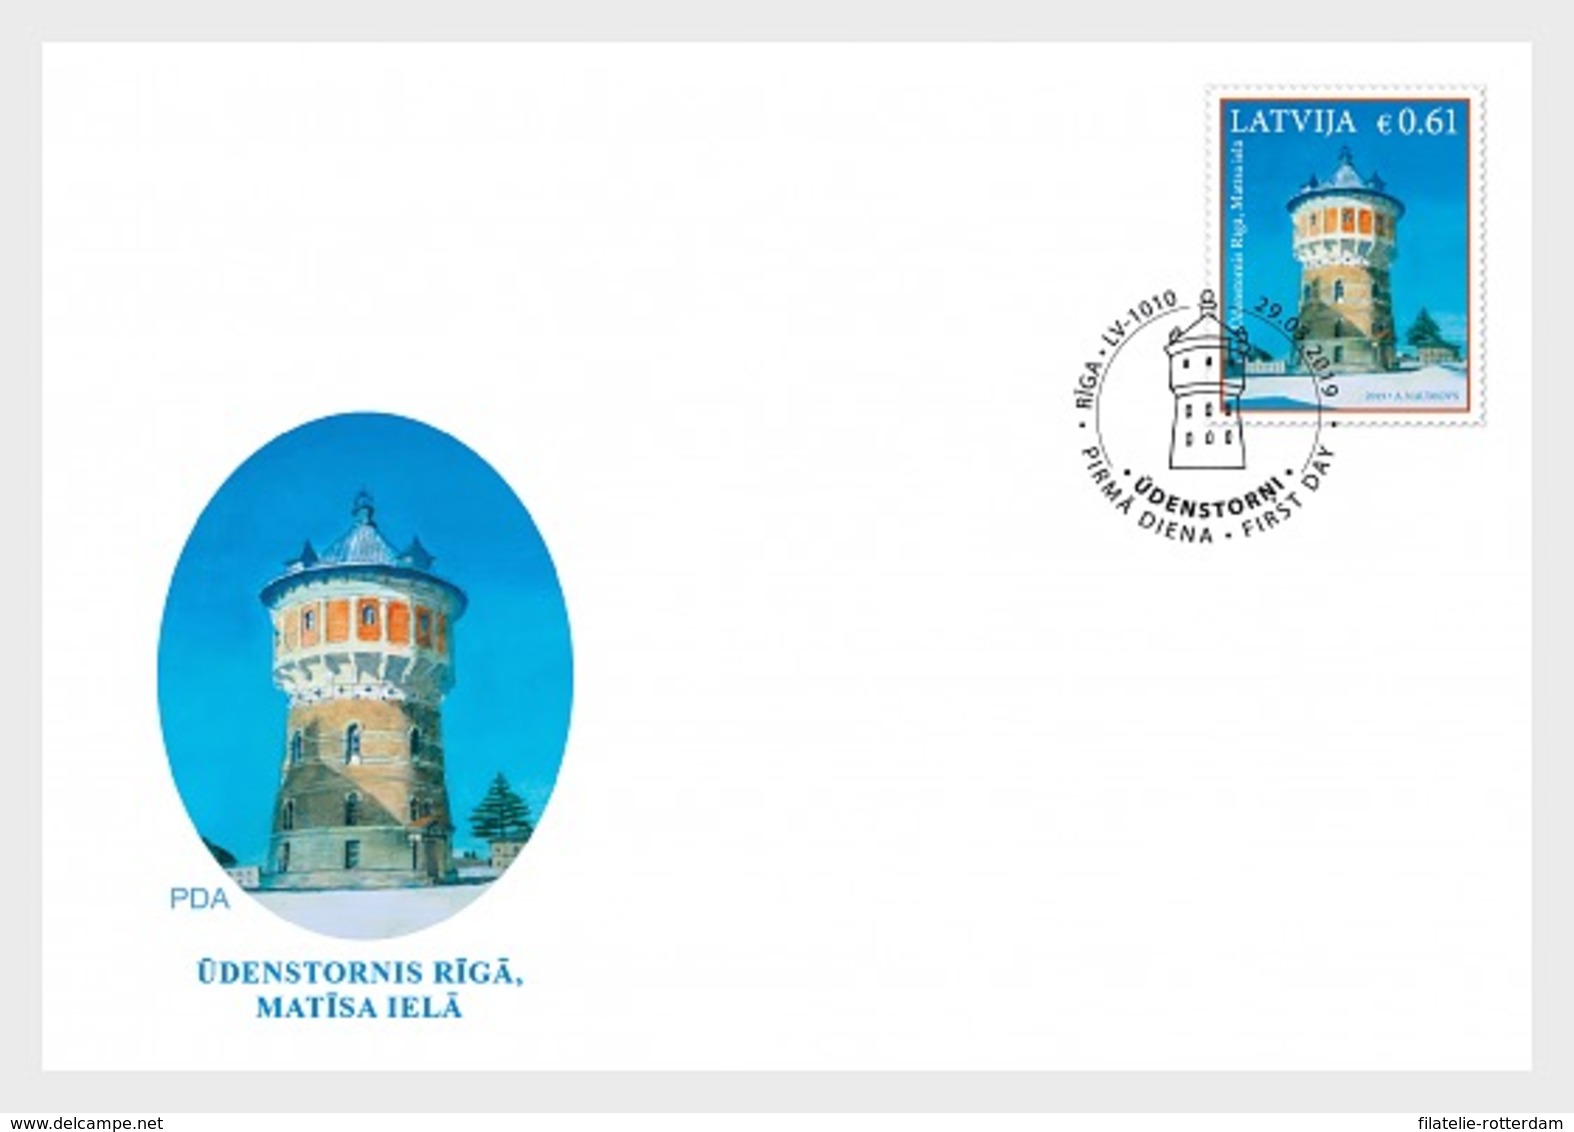 Letland / Latvia - Postfris / MNH - FDC Watertoren 2019 - Letland